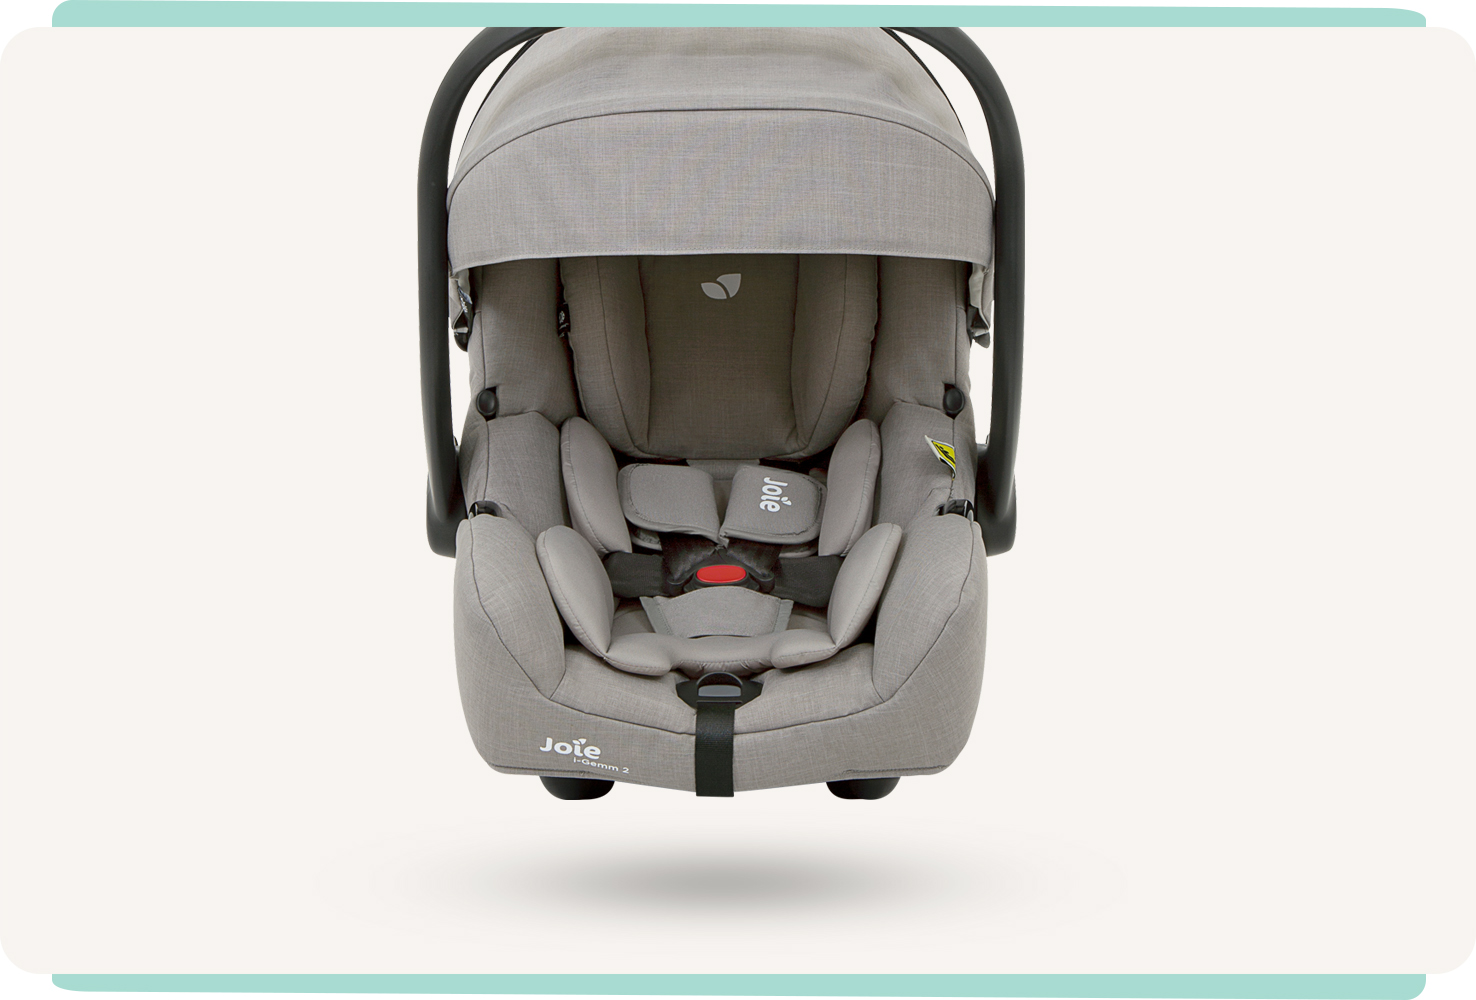 Siège auto pour bébé Joie i-Gemm 2, coloris gris, orienté vers l’avant avec le pare-soleil attaché.